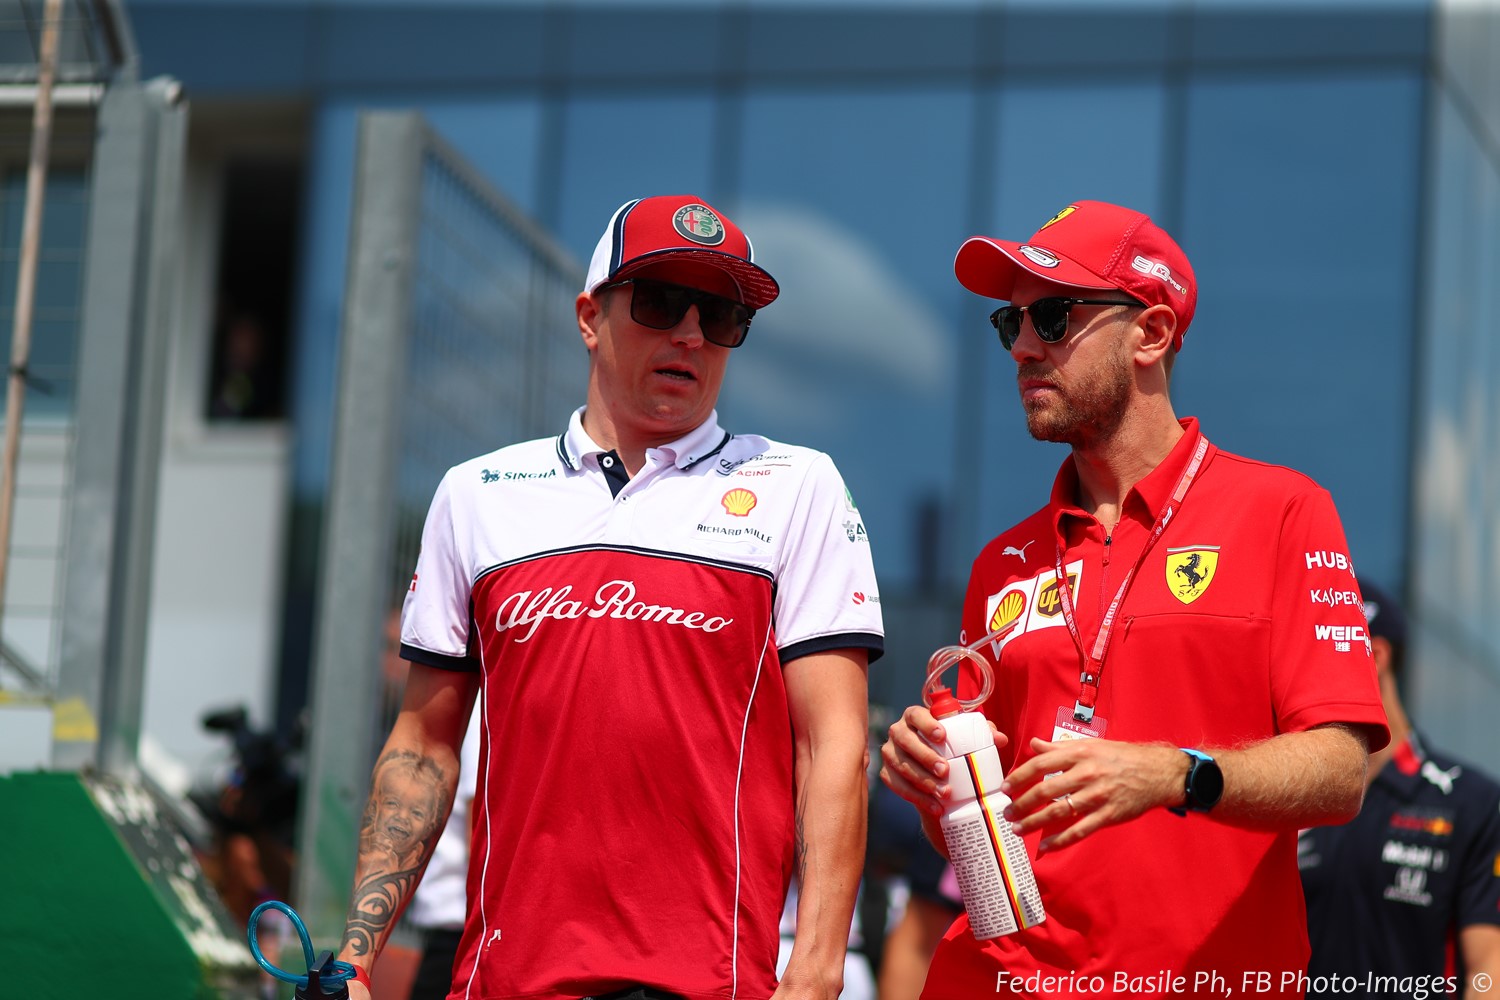 Kimi Raikkonen with former Ferrari teammate Sebastian Vettel in Hungary Sunday